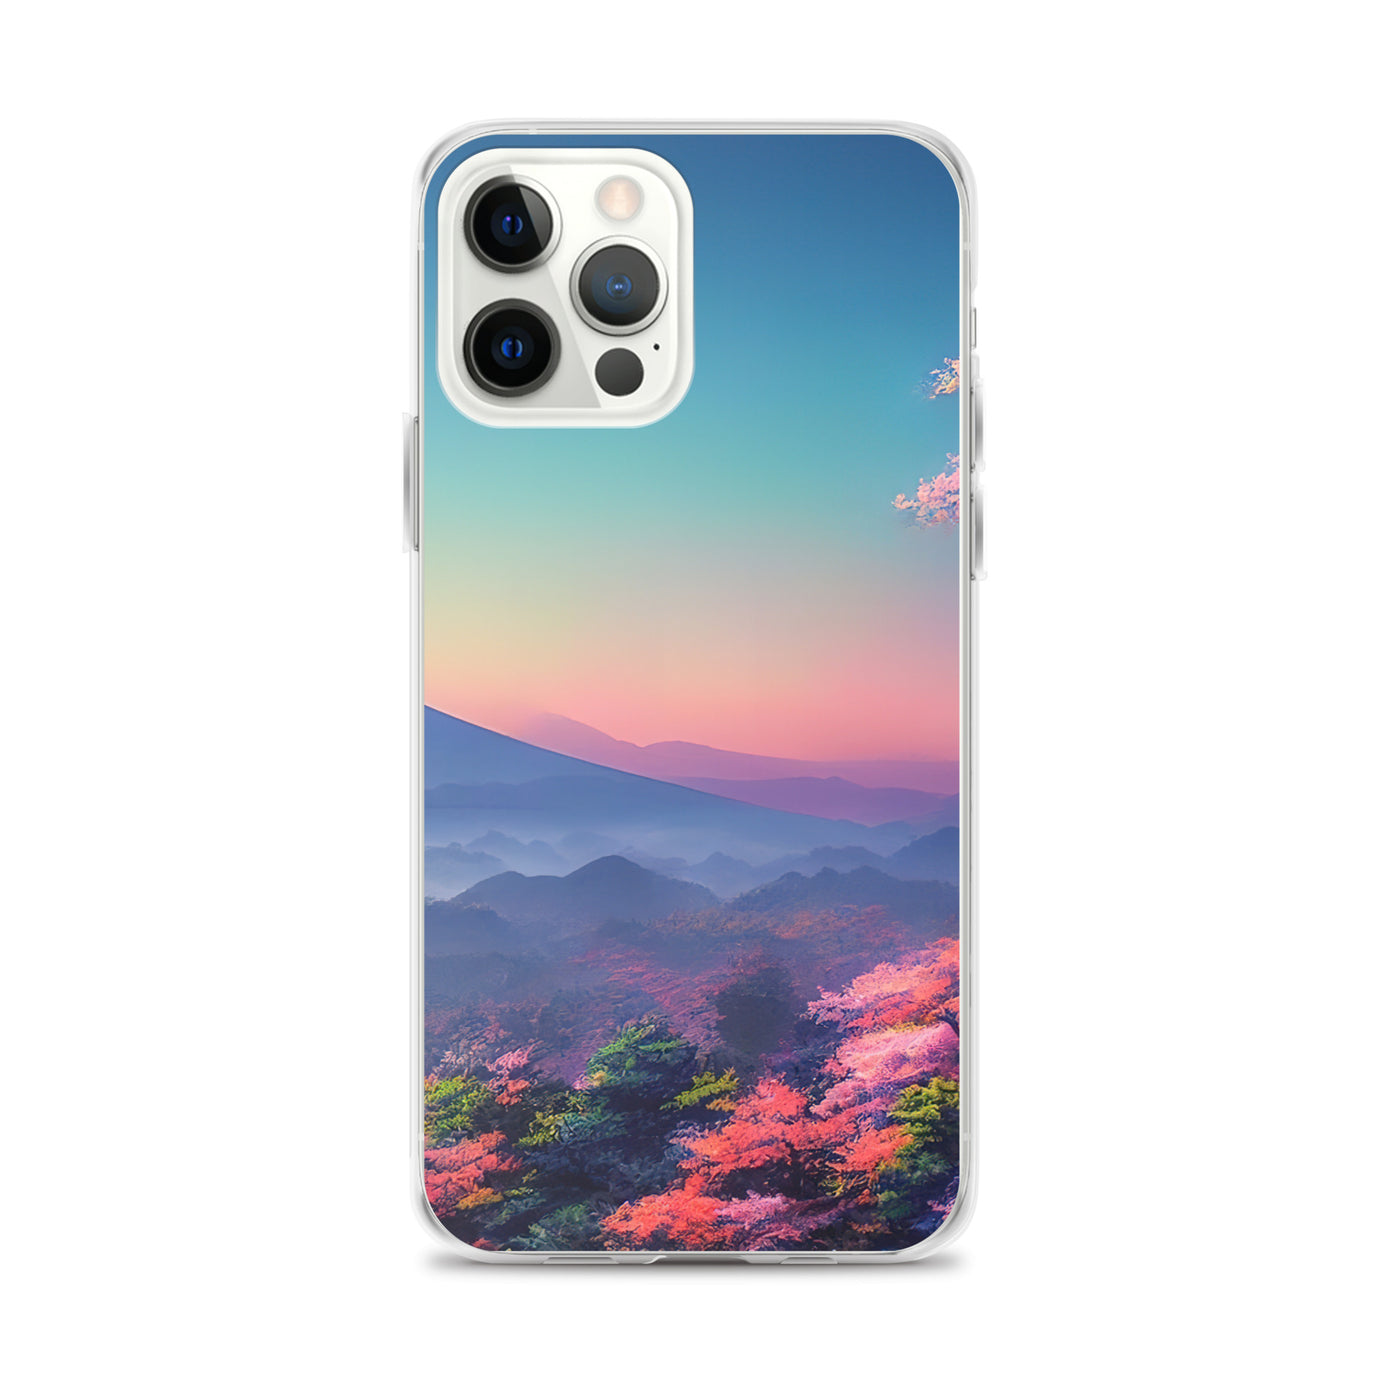 Berg und Wald mit pinken Bäumen - Landschaftsmalerei - iPhone Schutzhülle (durchsichtig) berge xxx iPhone 12 Pro Max